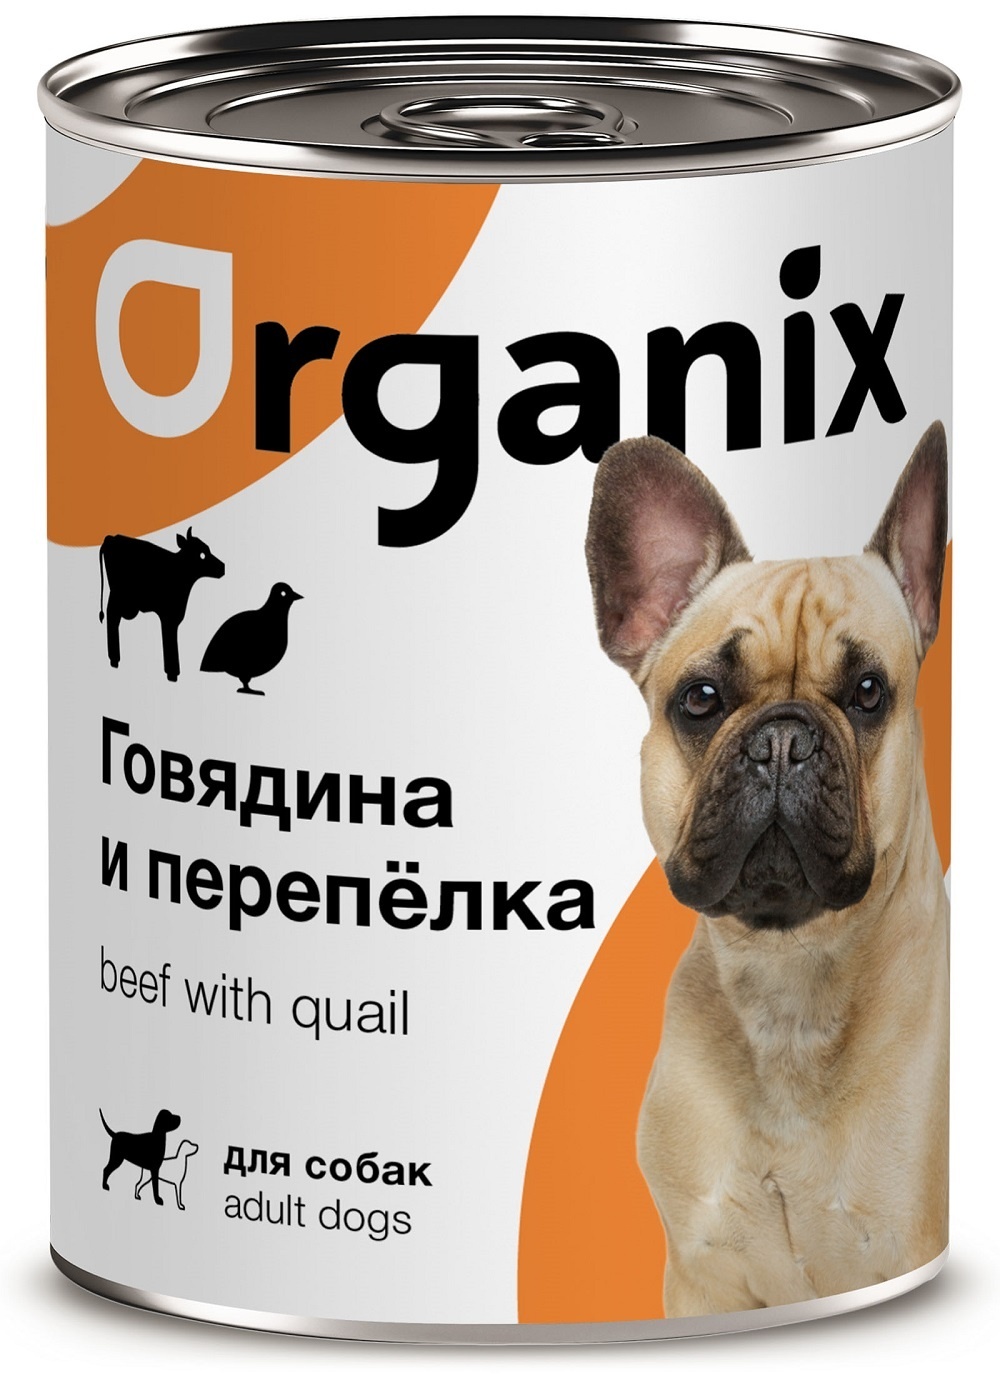 Organix консервы Organix консервы для собак, с говядиной и перепелкой (410 г) organix консервы organix консервы с говядиной и перепелкой для кошек 410 г